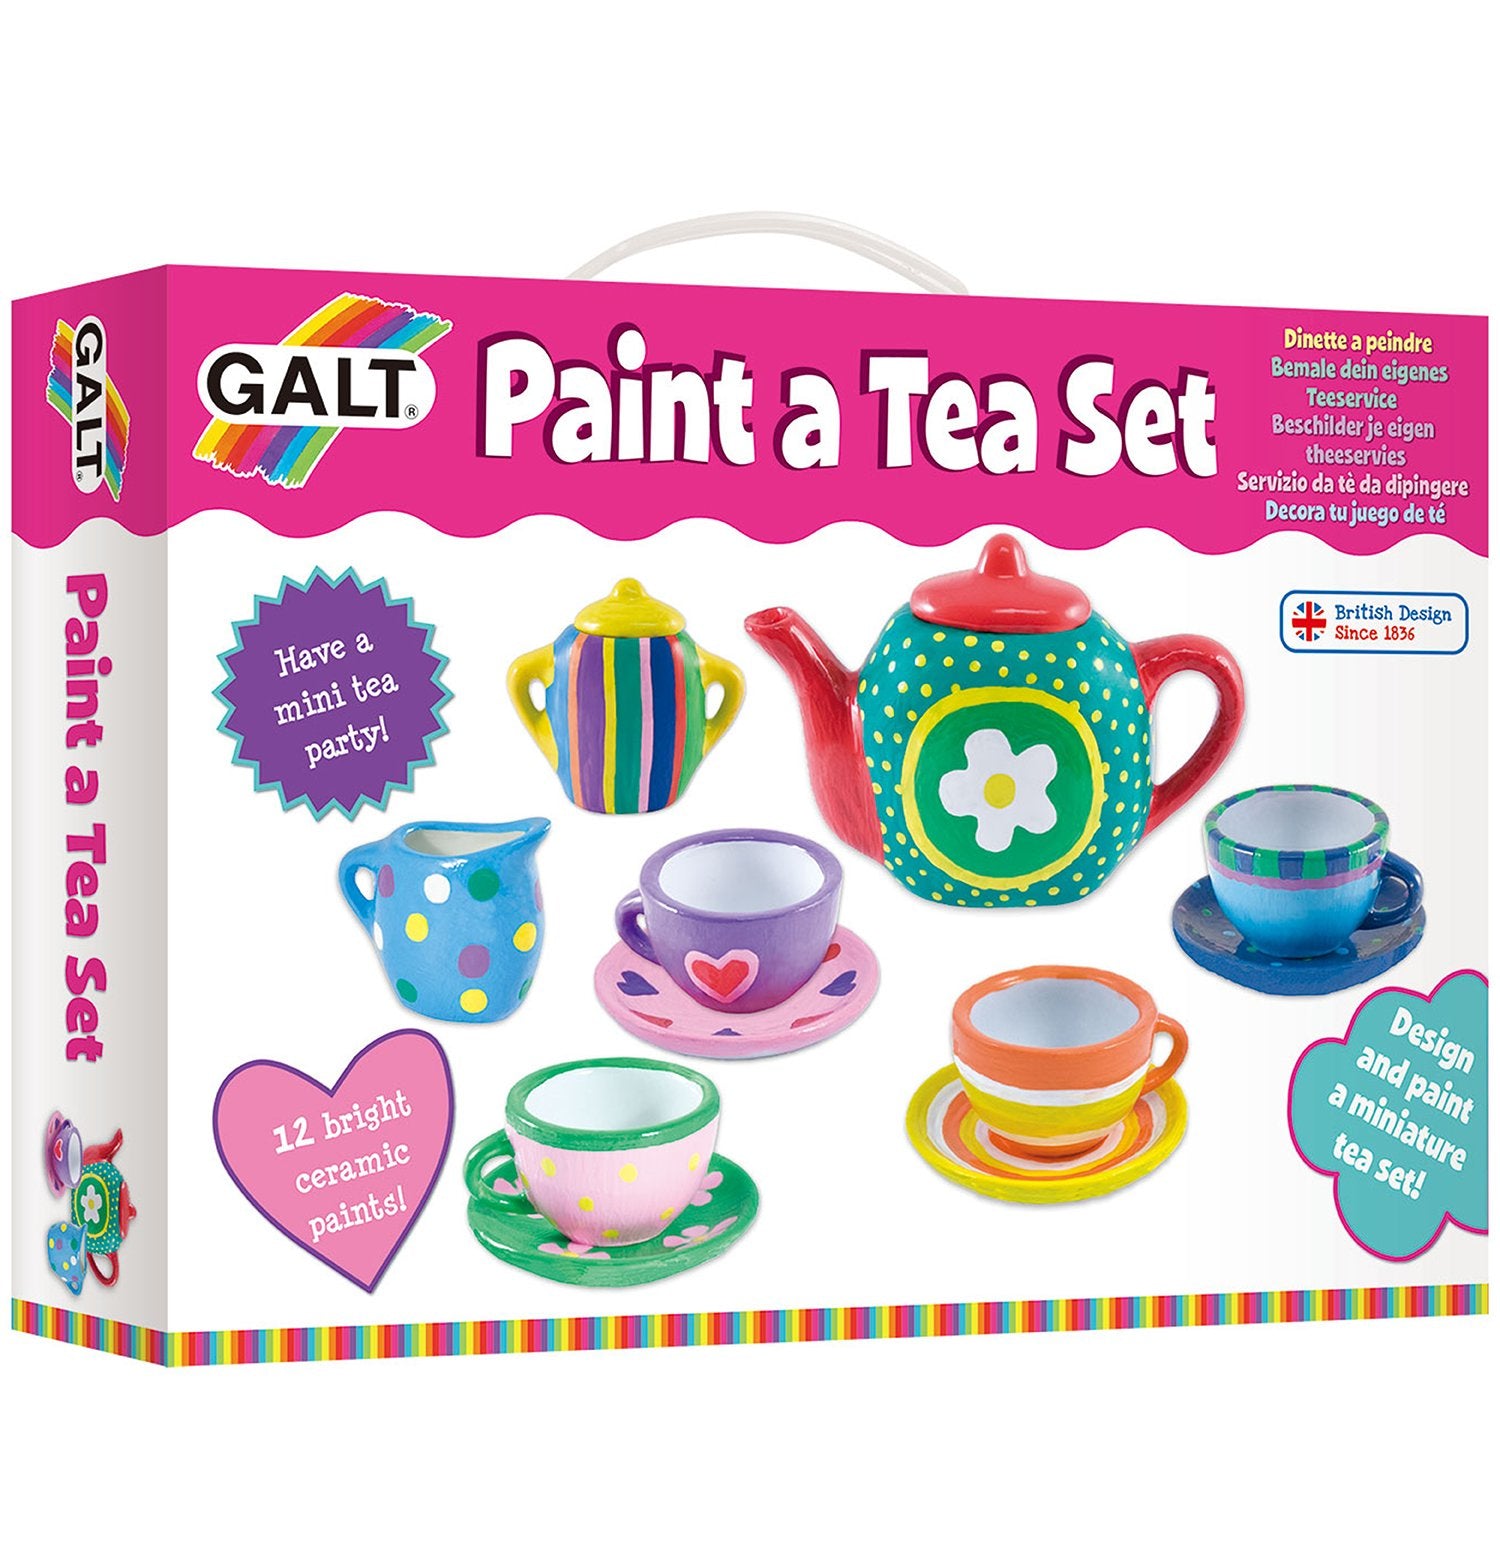 Paint a Tea Set - Galt